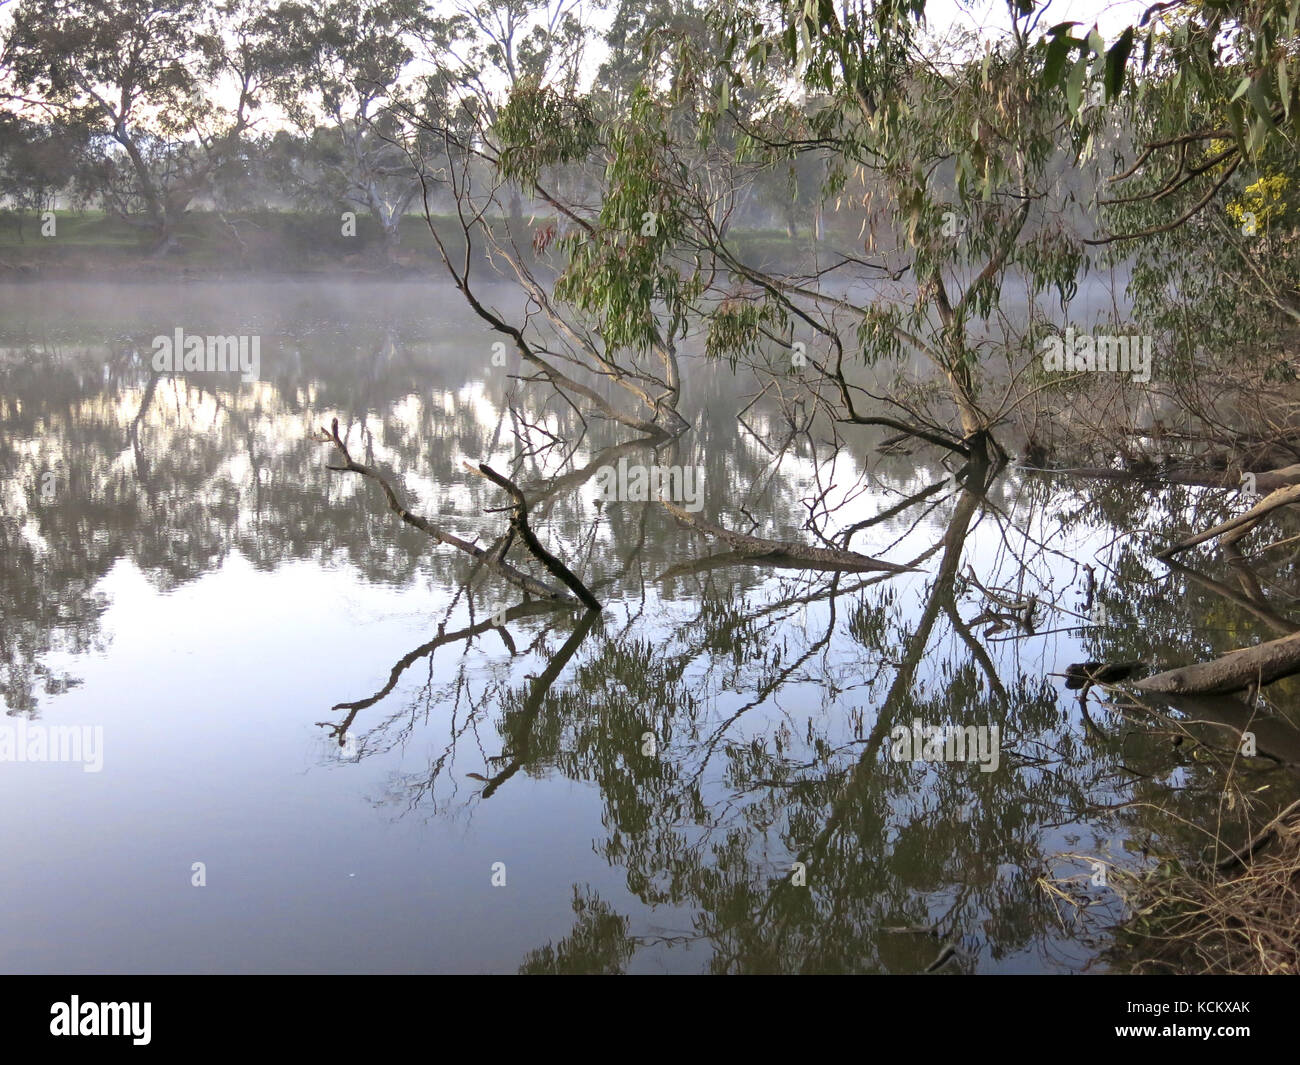 Tôt le matin sur la rivière Goulburn, pêche, canotage et destination de vacances au bord de la rivière. Seymour, centre de Victoria, Australie Banque D'Images